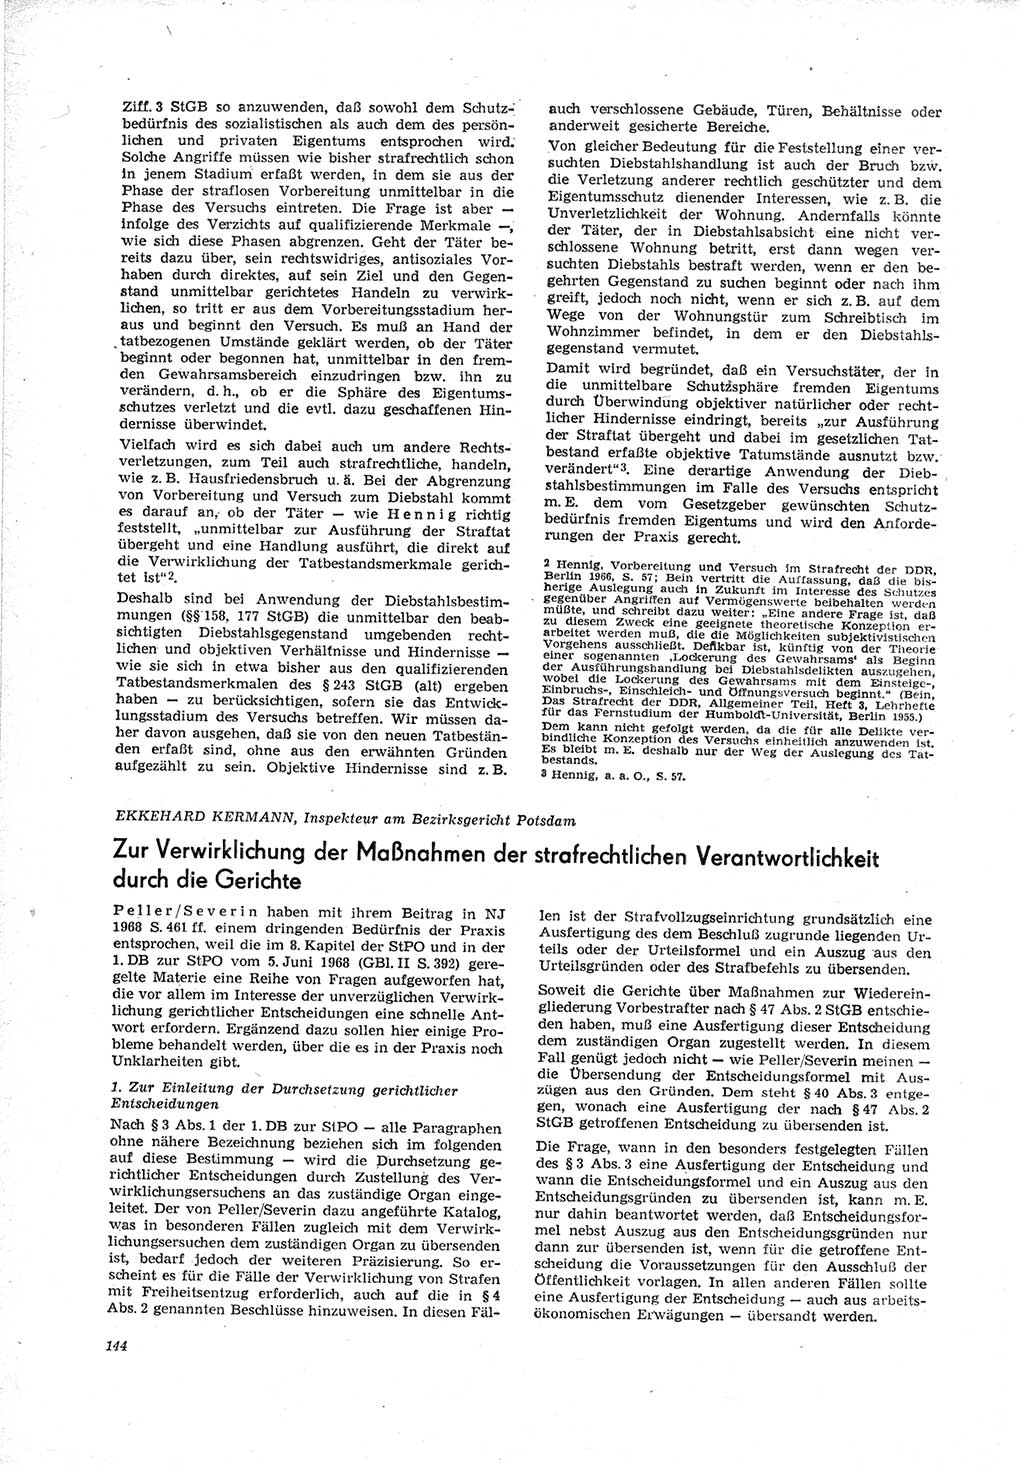 Neue Justiz (NJ), Zeitschrift für Recht und Rechtswissenschaft [Deutsche Demokratische Republik (DDR)], 23. Jahrgang 1969, Seite 144 (NJ DDR 1969, S. 144)